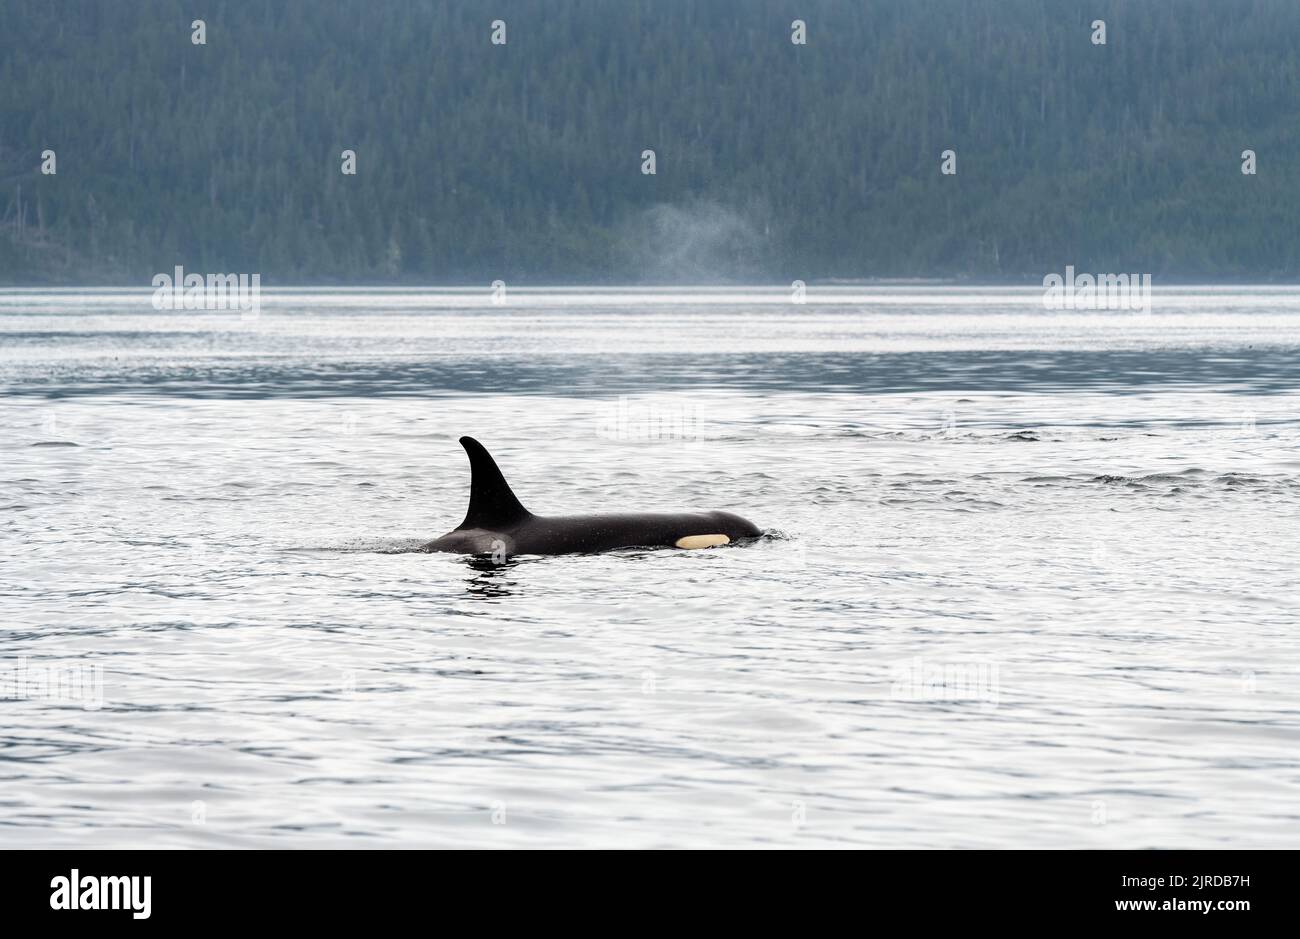 Orca ou orque (Orcinus orca) lors d'une excursion d'observation des baleines à Telegraph Cove, île de Vancouver, Colombie-Britannique, Canada. Banque D'Images